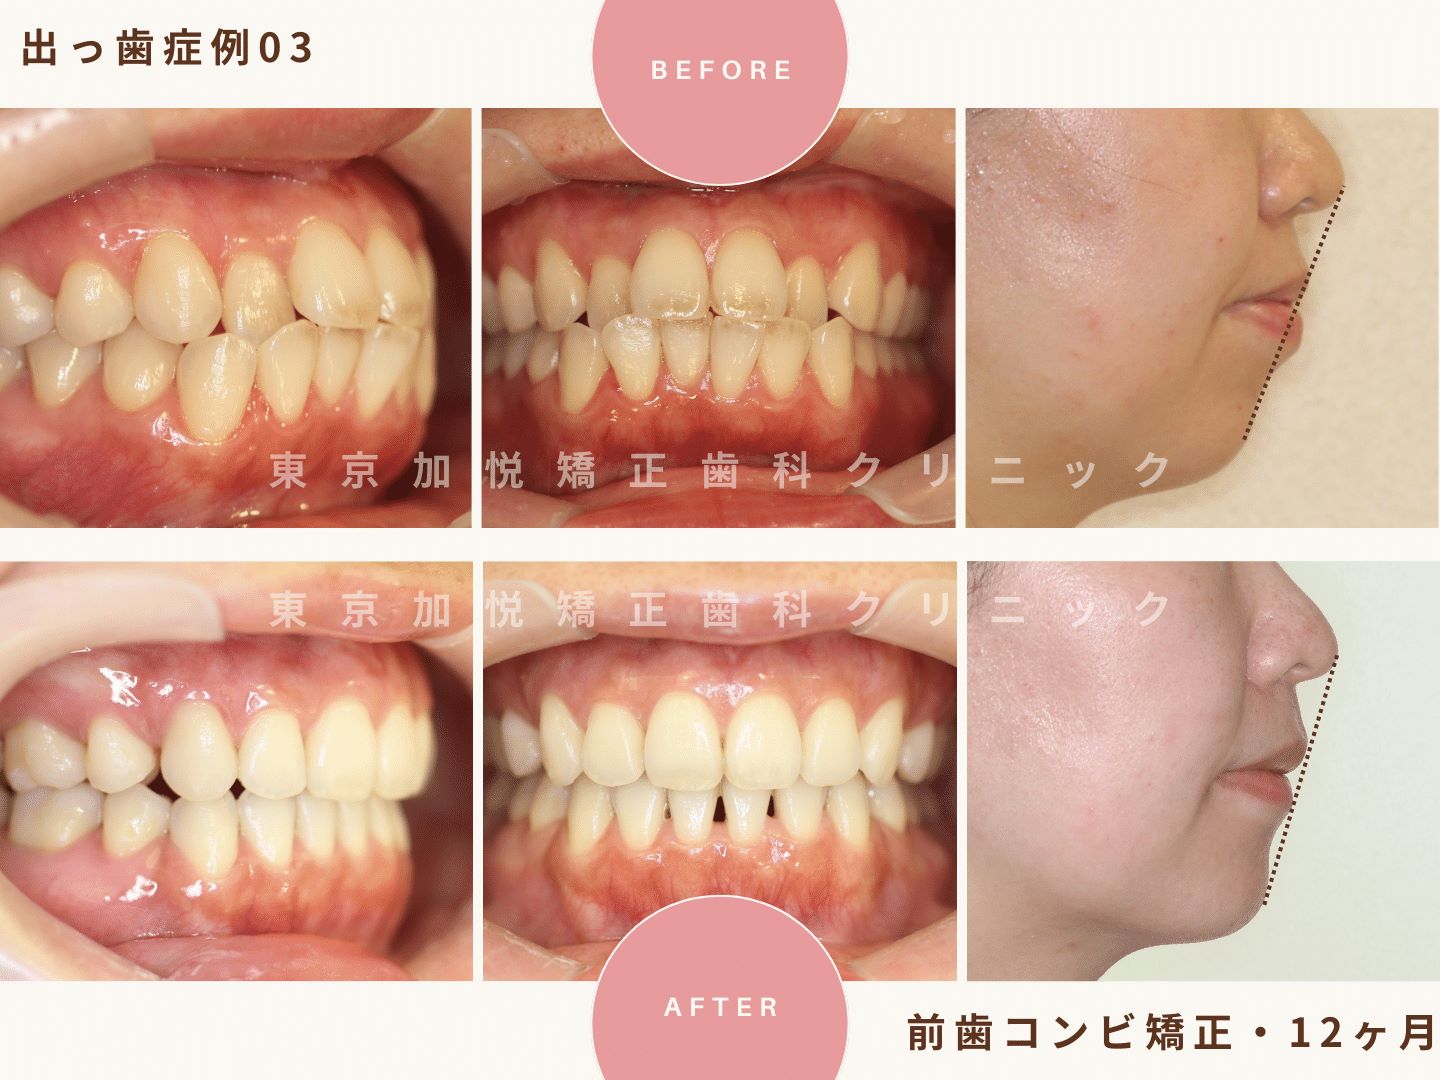 出っ歯矯正症例3、前歯だけの矯正（抜歯あり）で出っ歯を治療した30代女性